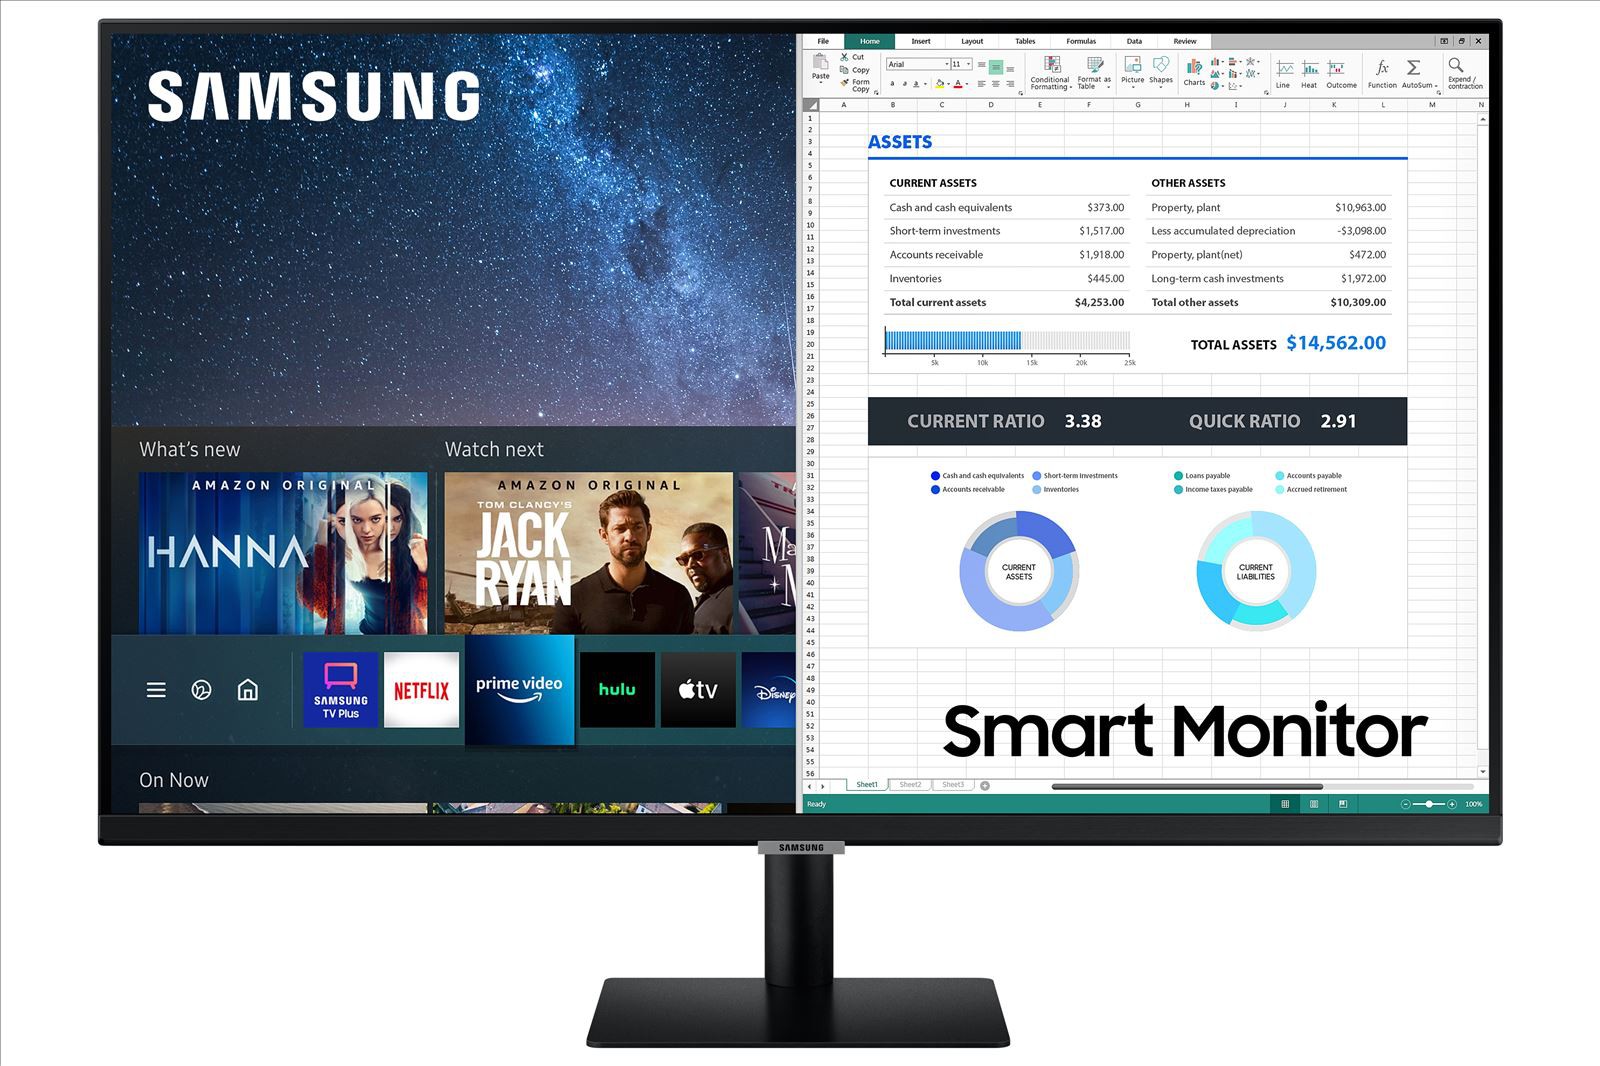 Samsung S27AM500 Smart Monitor da 27" Flat